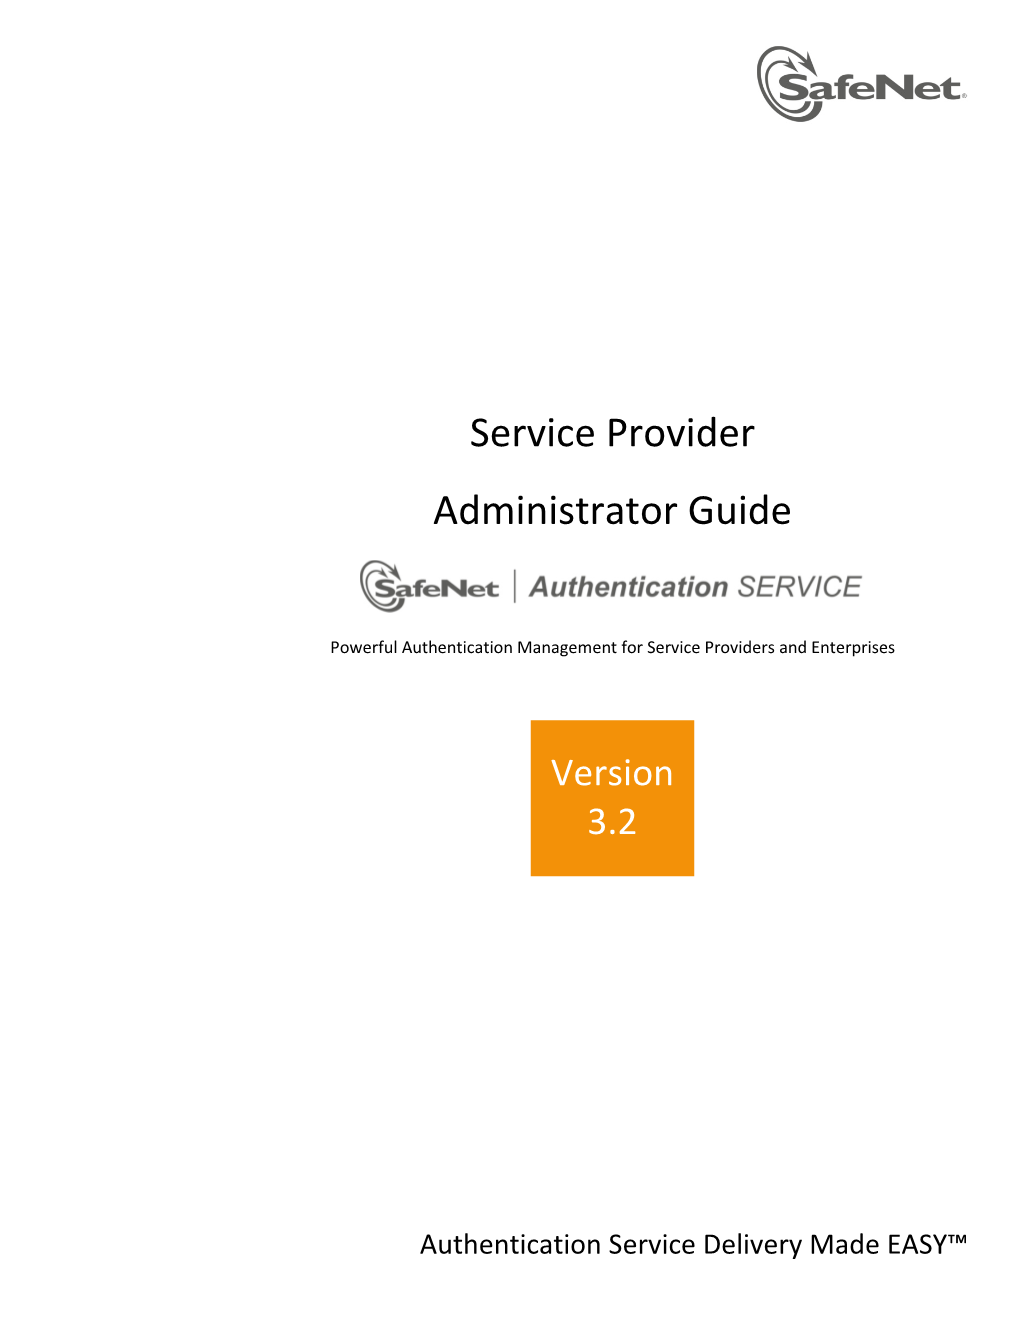 Service Provider Administrator Guide